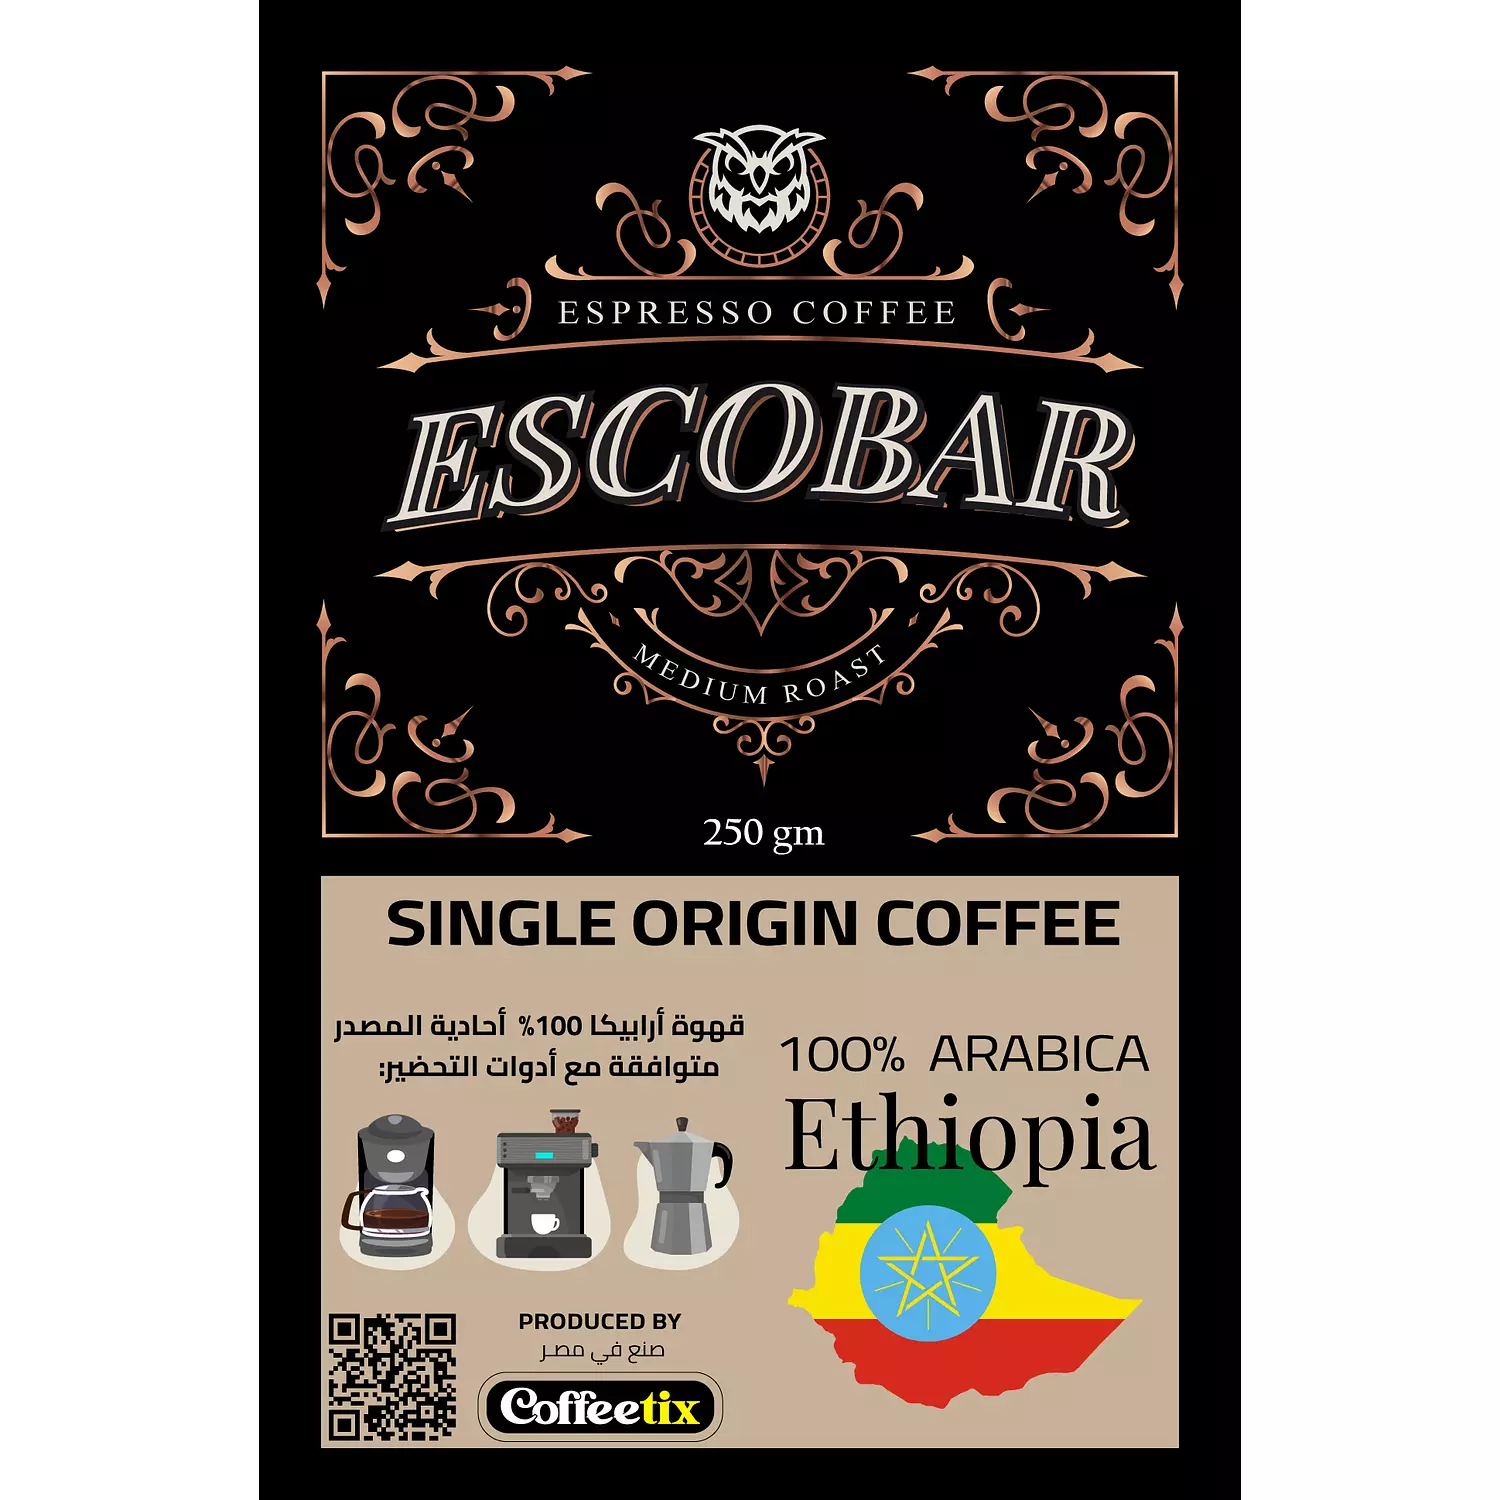 100% Arabica single-origin coffee from Ethiopia hover image